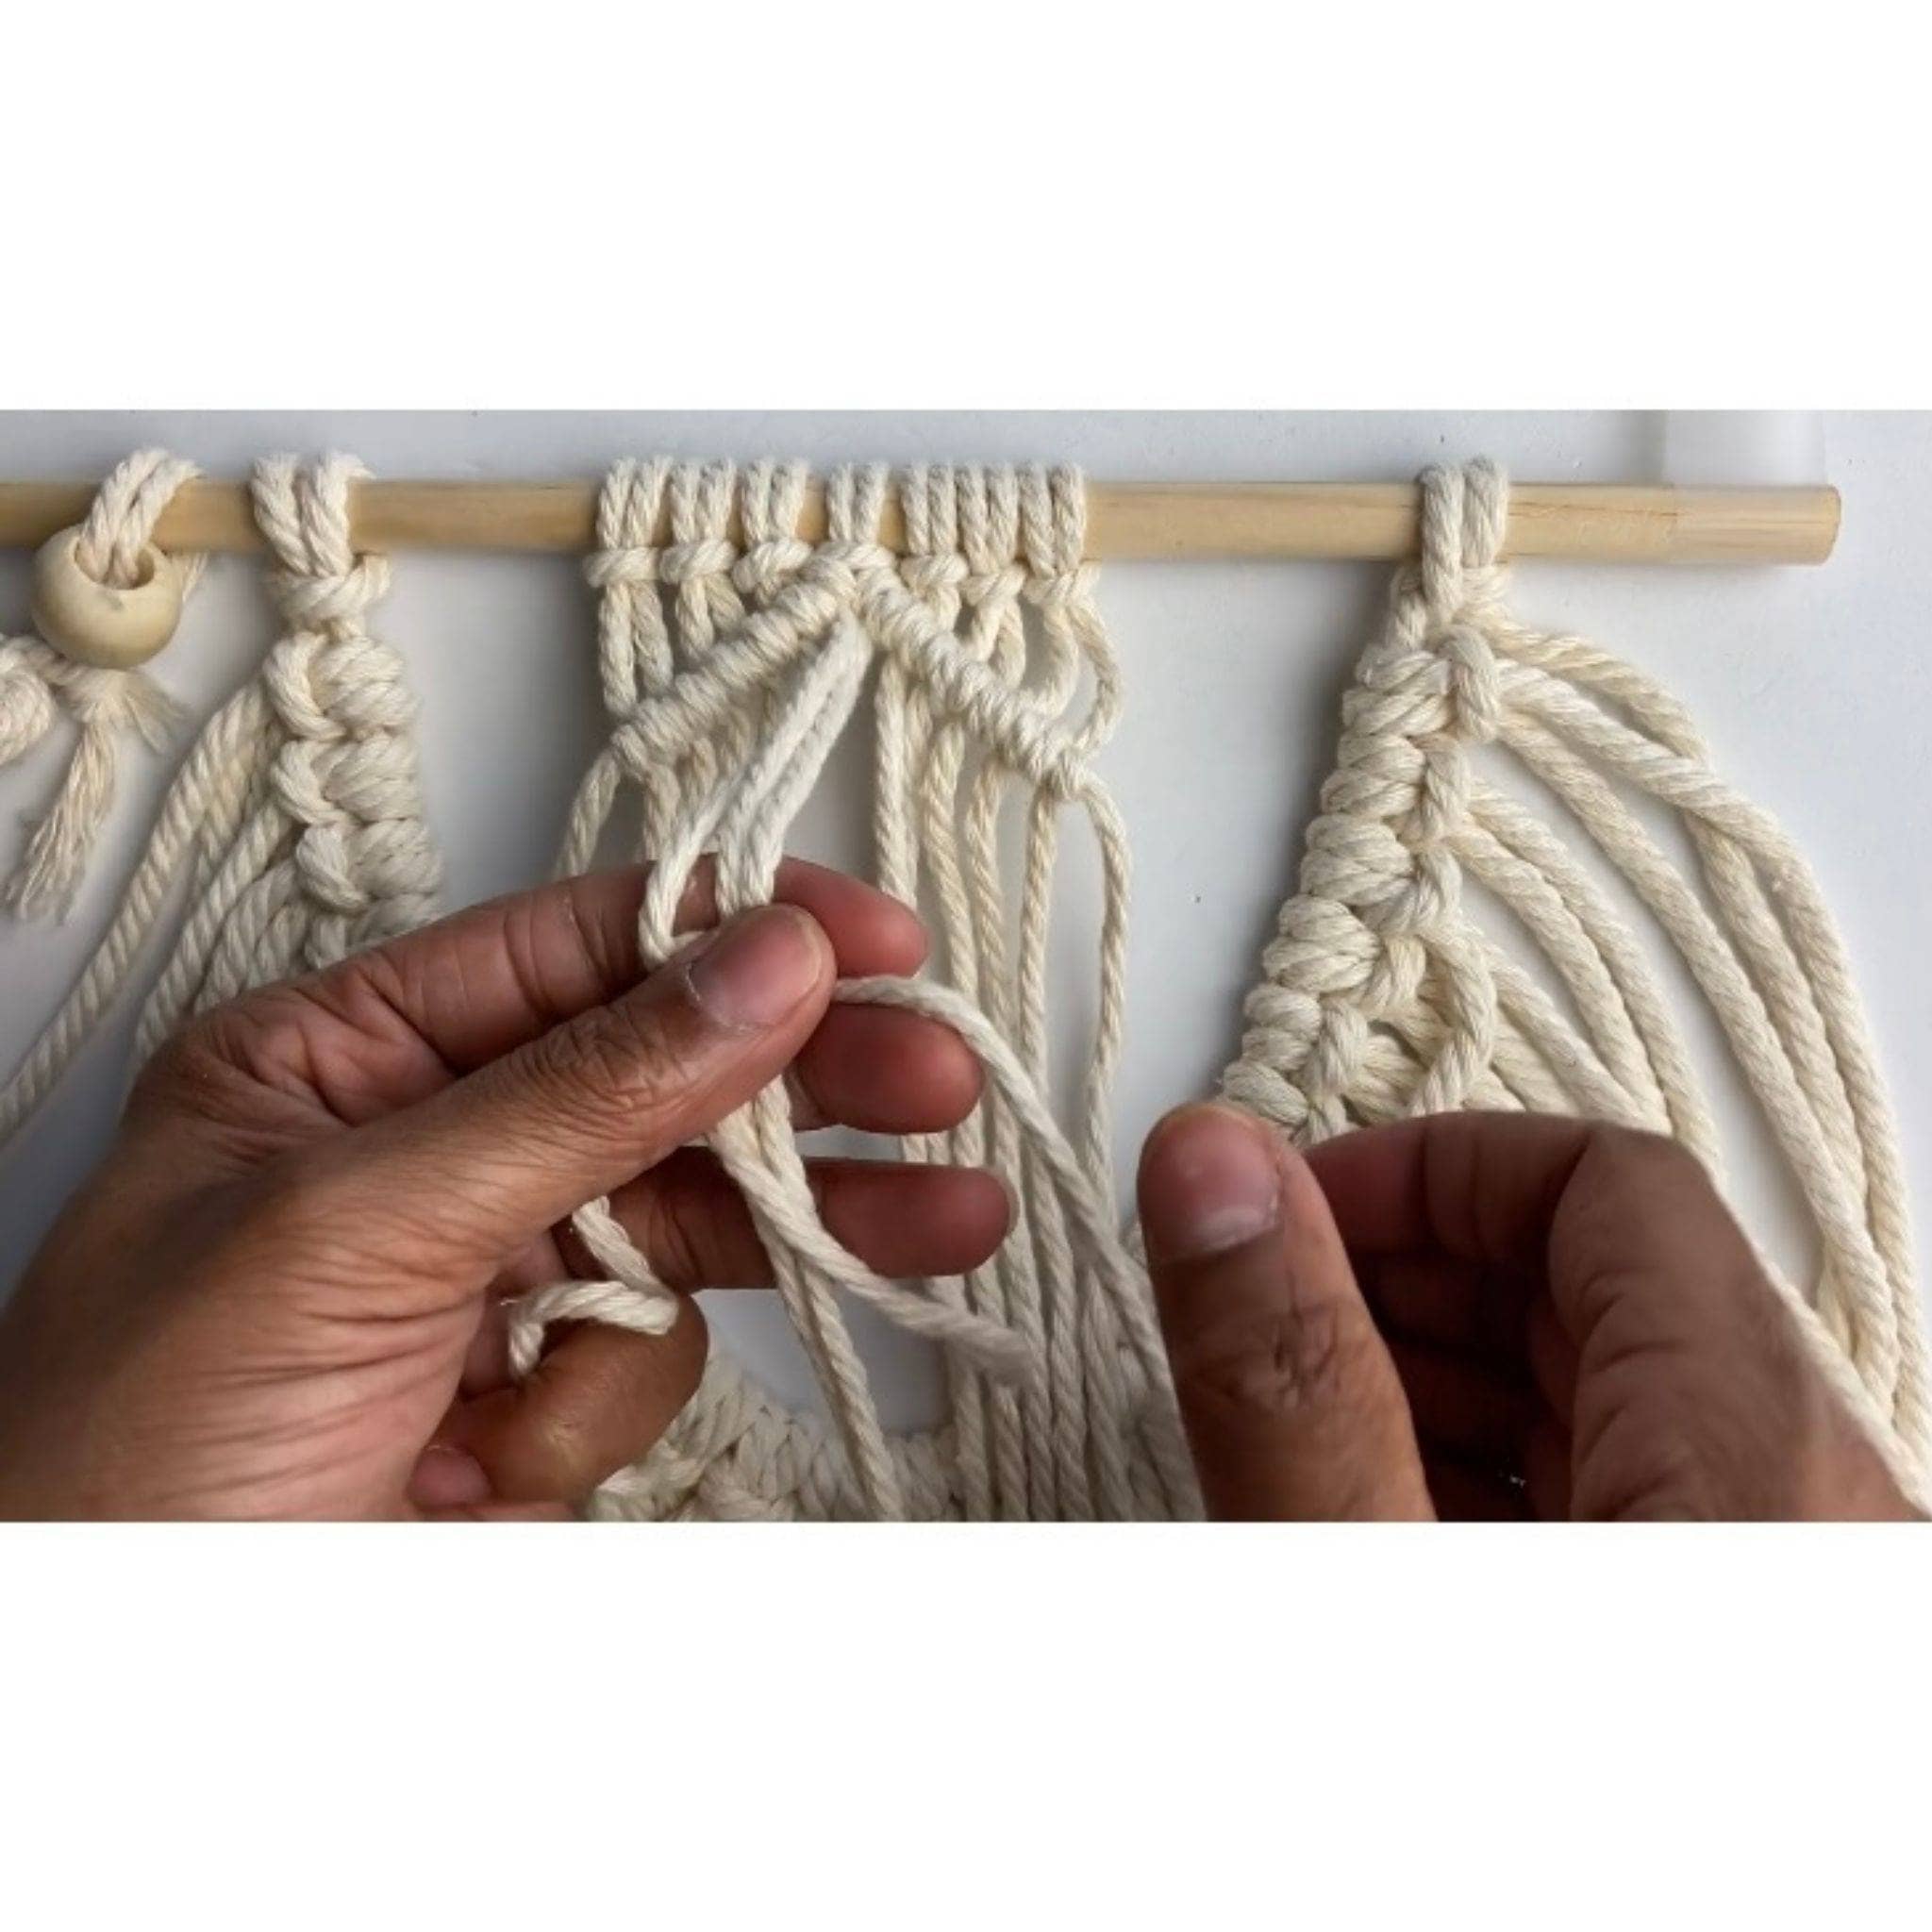 DIY Macrame Wall Hanging Kit